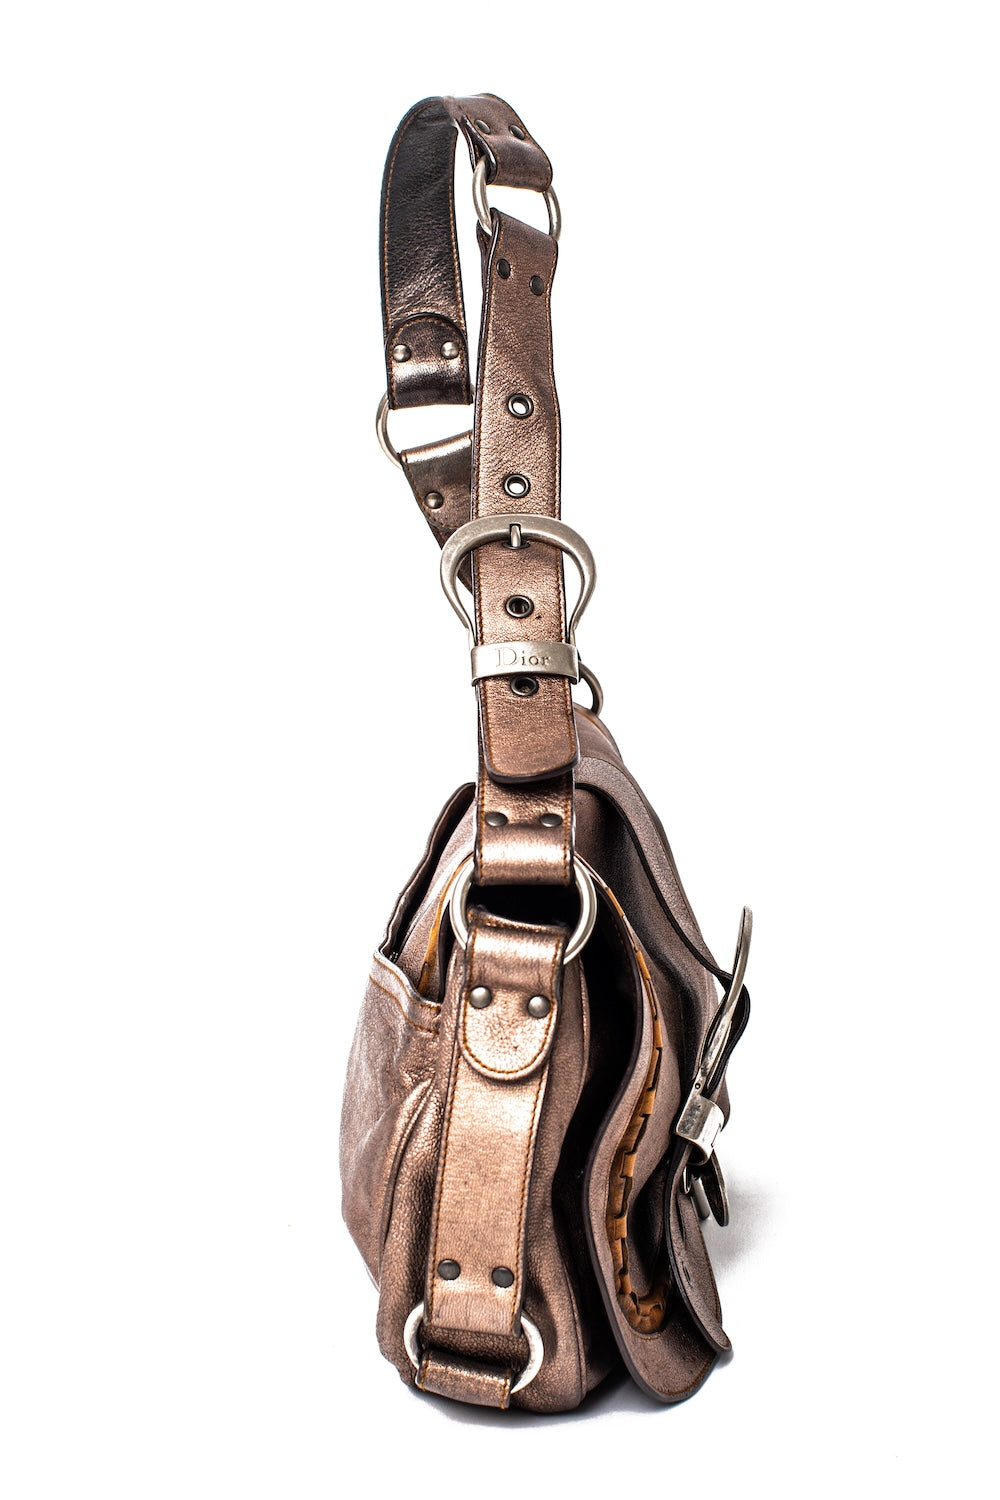 Christian Dior <br> F/W 2006 John Galliano runway & campaign Gaucho saddle bag